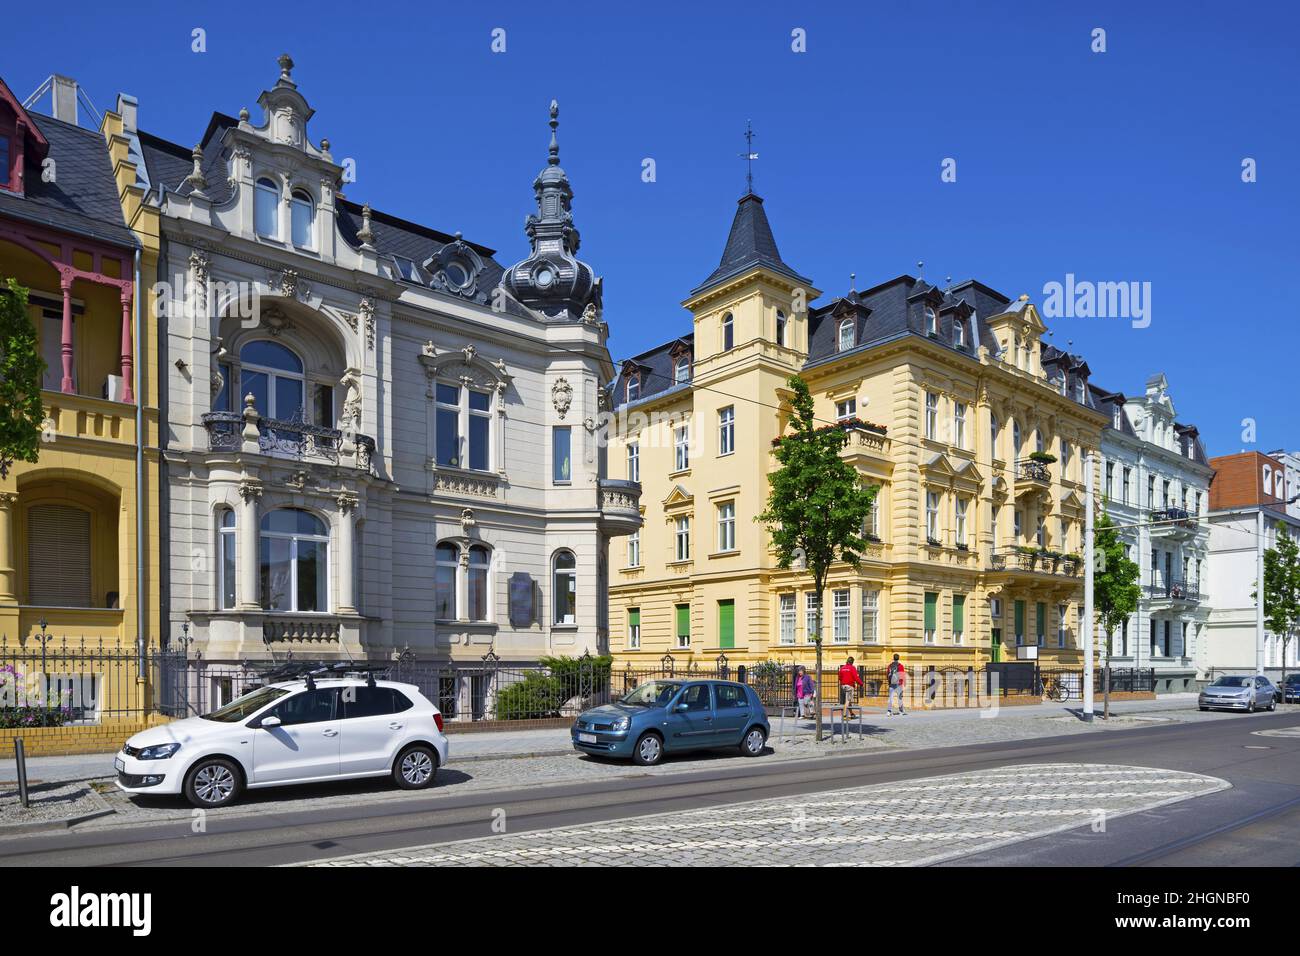 Bunte Fassaden alter historischer Mietshäuser an der Bahnhofstraße in Cottbus, Brandenburg, Deutschland Stockfoto